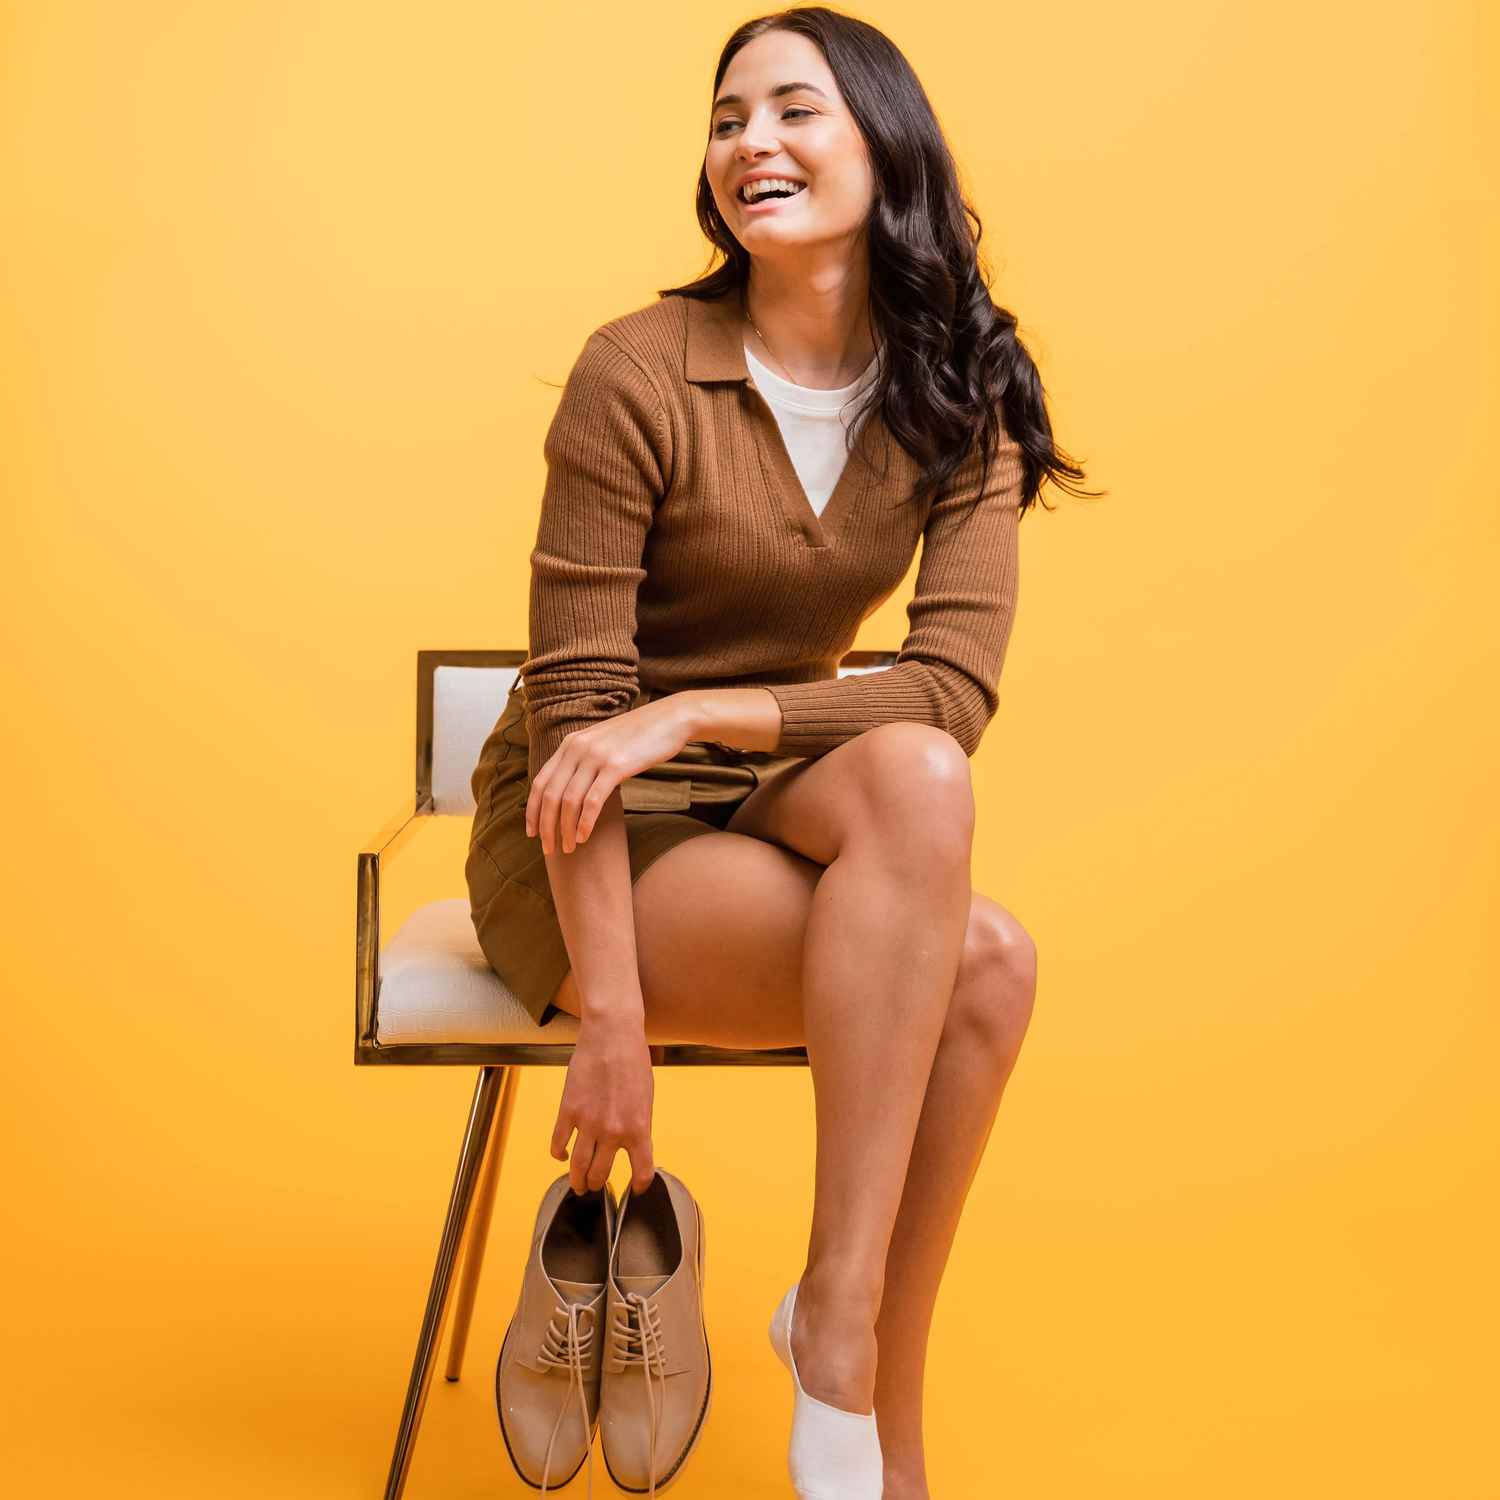 Une femme rit en étant assise sur une chaise et en tenant ses chaussures.